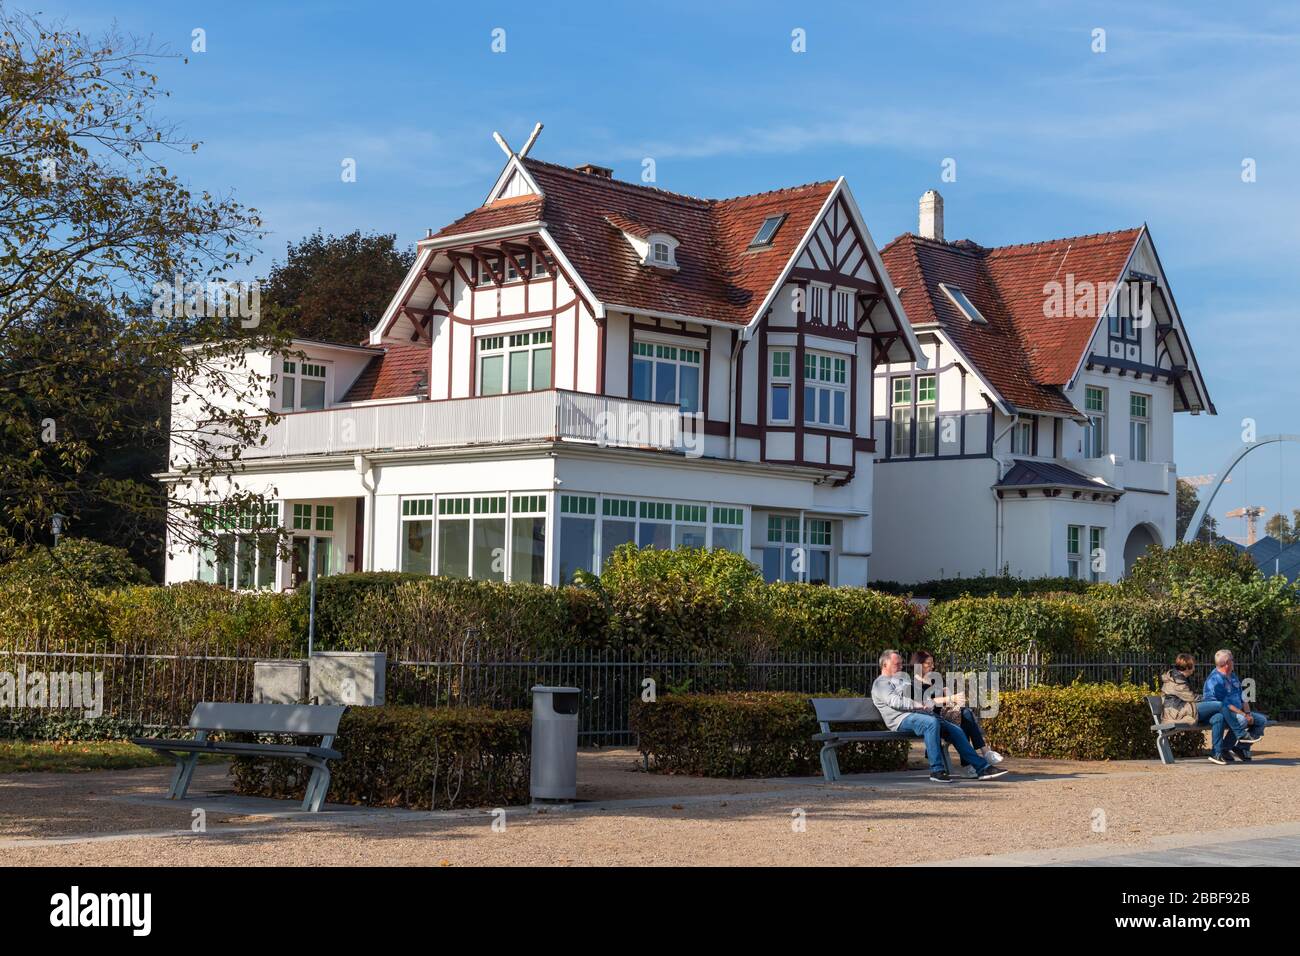 Lübeck-Travemünde, Allemagne – 10 octobre 2018 : bâtiments historiques sur la promenade de la plage de Travemünde. Un aimant touristique pour les vacanciers de la mer Baltique. H Banque D'Images